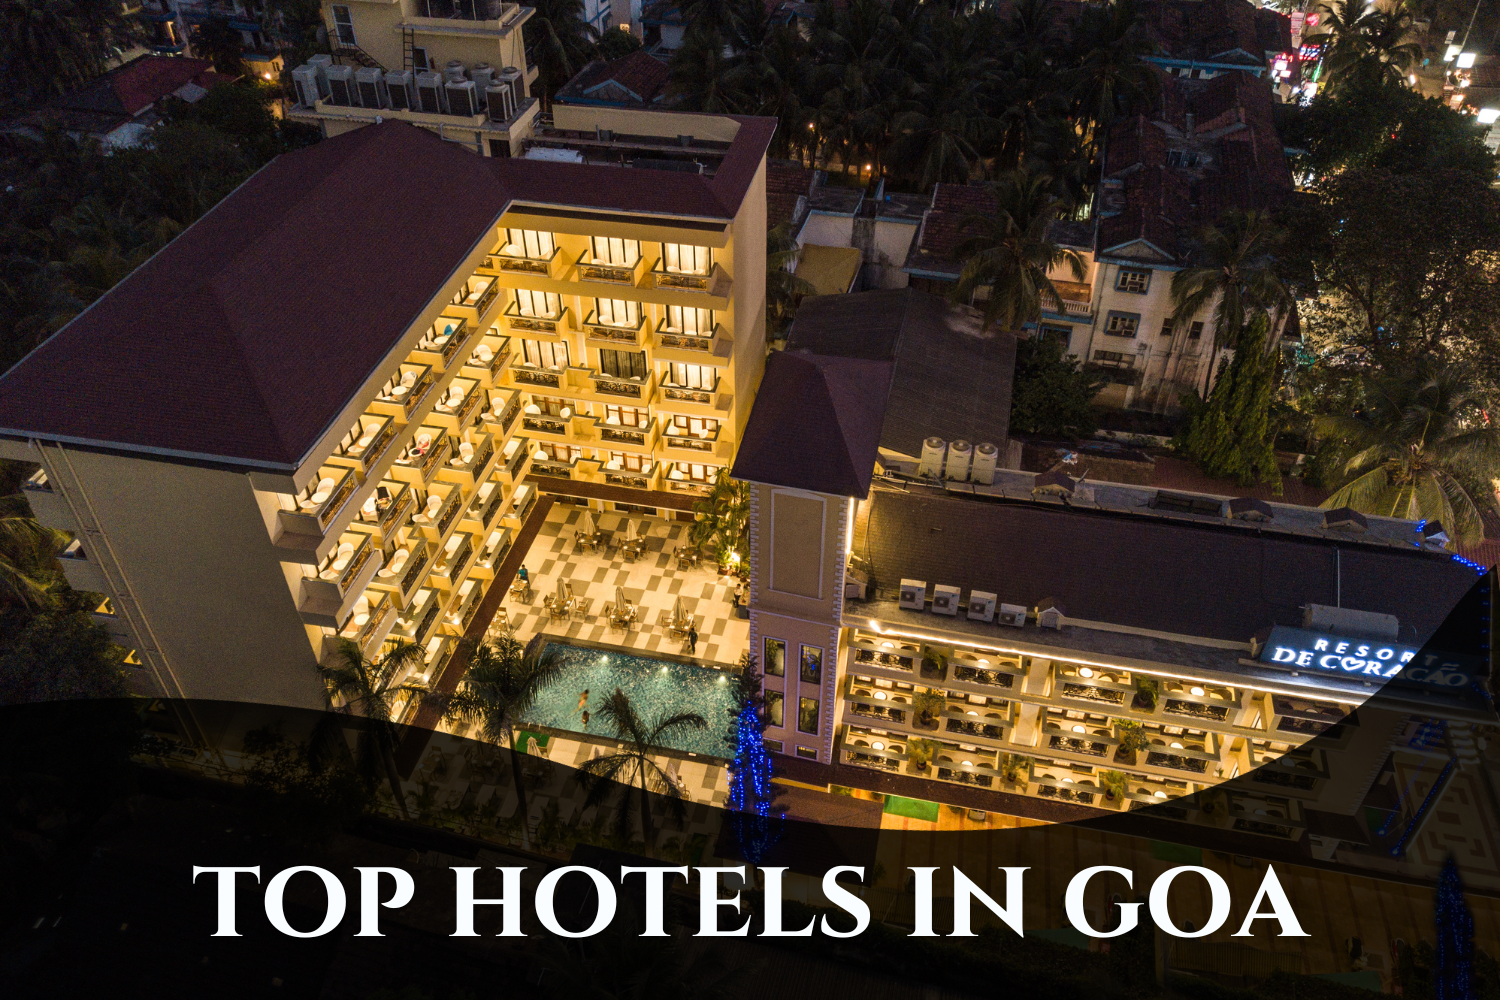 Discovering Luxury: Resort De CoraçÃo among Top Hotels in Goa